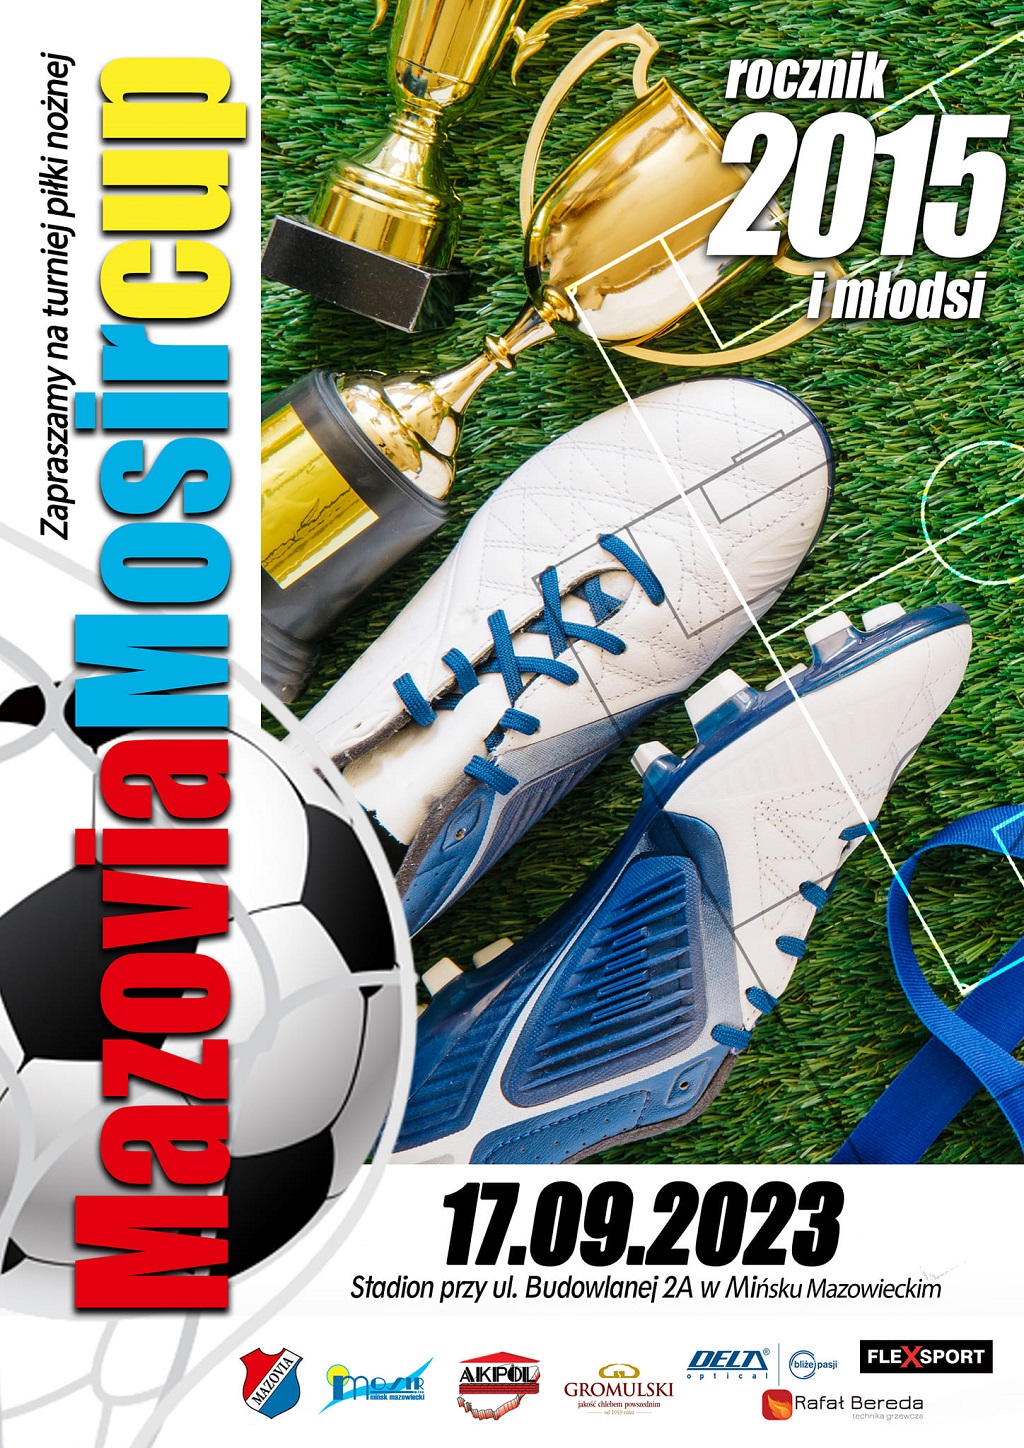 Zapraszamy na turniej piłki nożnej Mazovia MOSiR CUP - 17.09.2023 Stadion przy ul. Budowlanej 2A w Mińsku Mazowieckim.